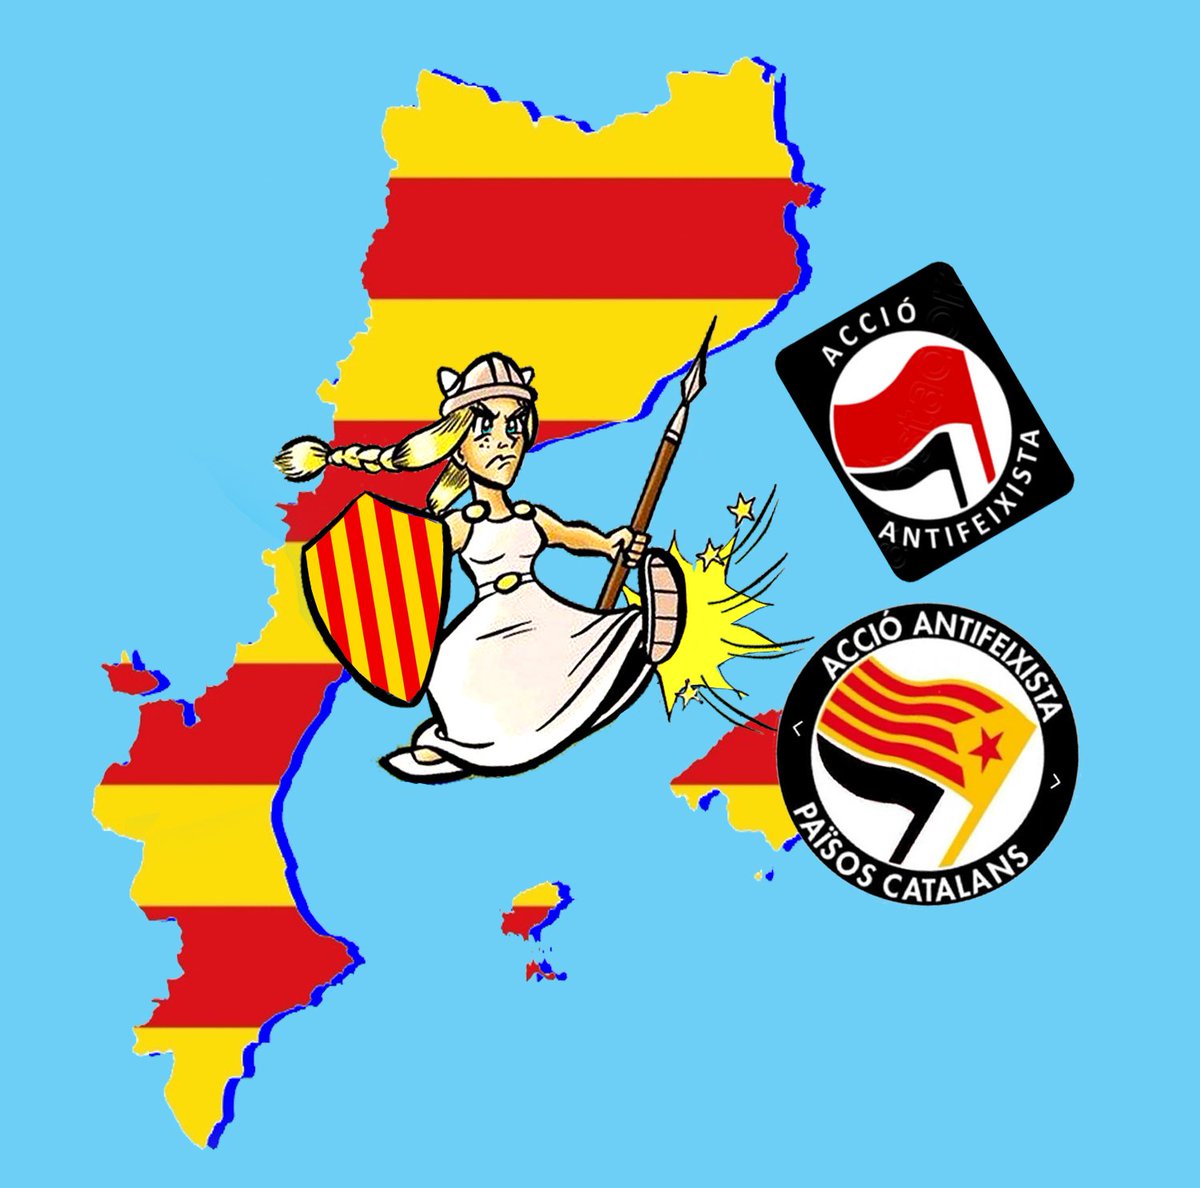 Antifas, sou els gossets d'espanya i del Globalisme per diluir la nostra nació!.
Els patriotes catalans us fotrem ben aviat fora de Catalunya.

Visca Catalunya lliure i catalana!👊🏻🏴󠁧󠁢󠁥󠁮󠁧󠁿🏴󠁧󠁢󠁥󠁮󠁧󠁿🏴󠁧󠁢󠁥󠁮󠁧󠁿